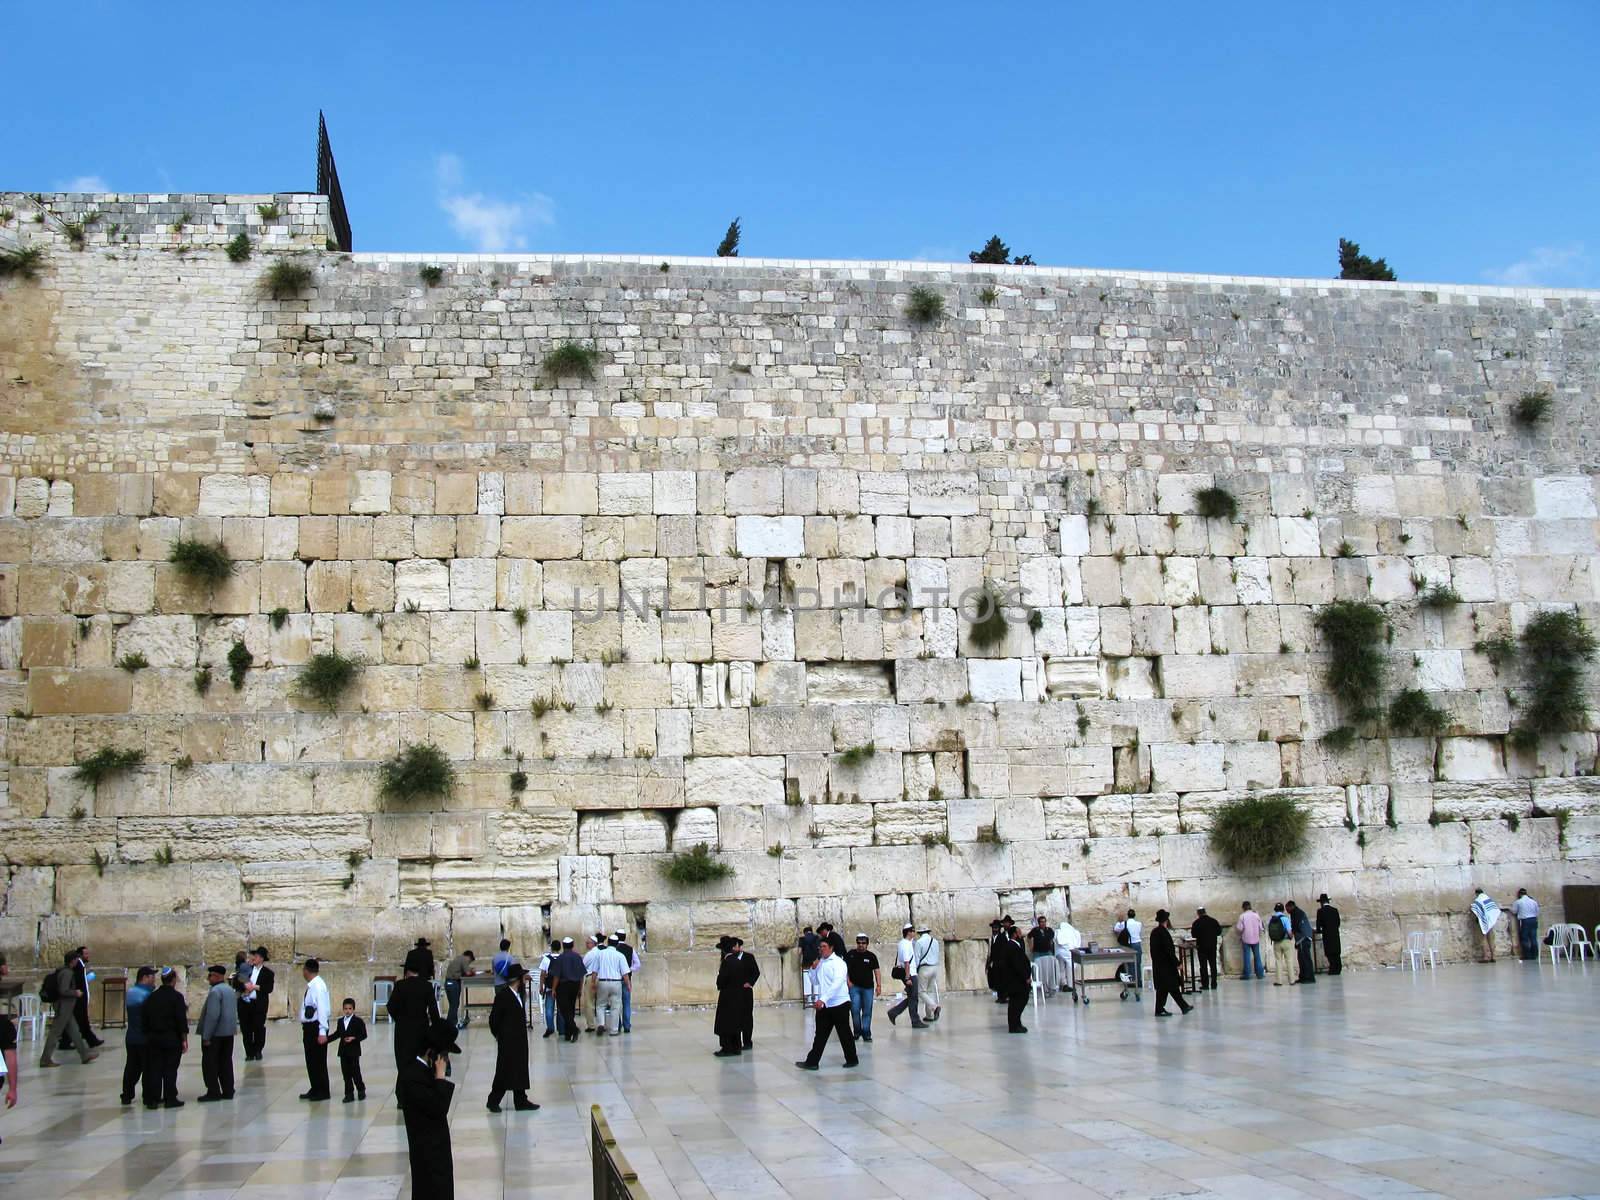 Western wall in Jerusalem in Israel, Middle east